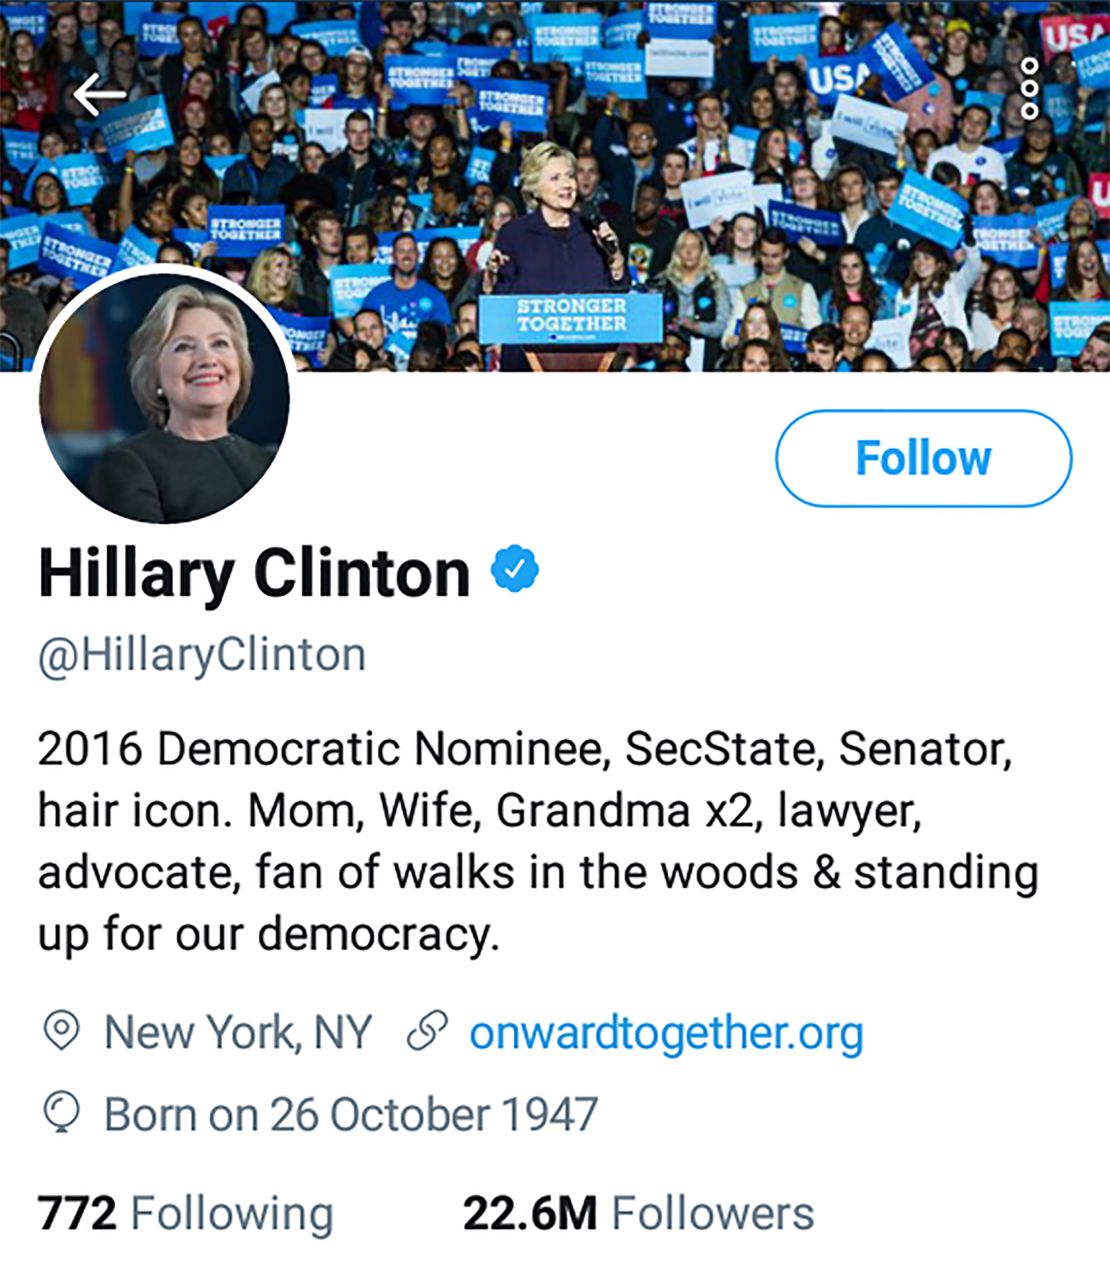 Hillary's bio